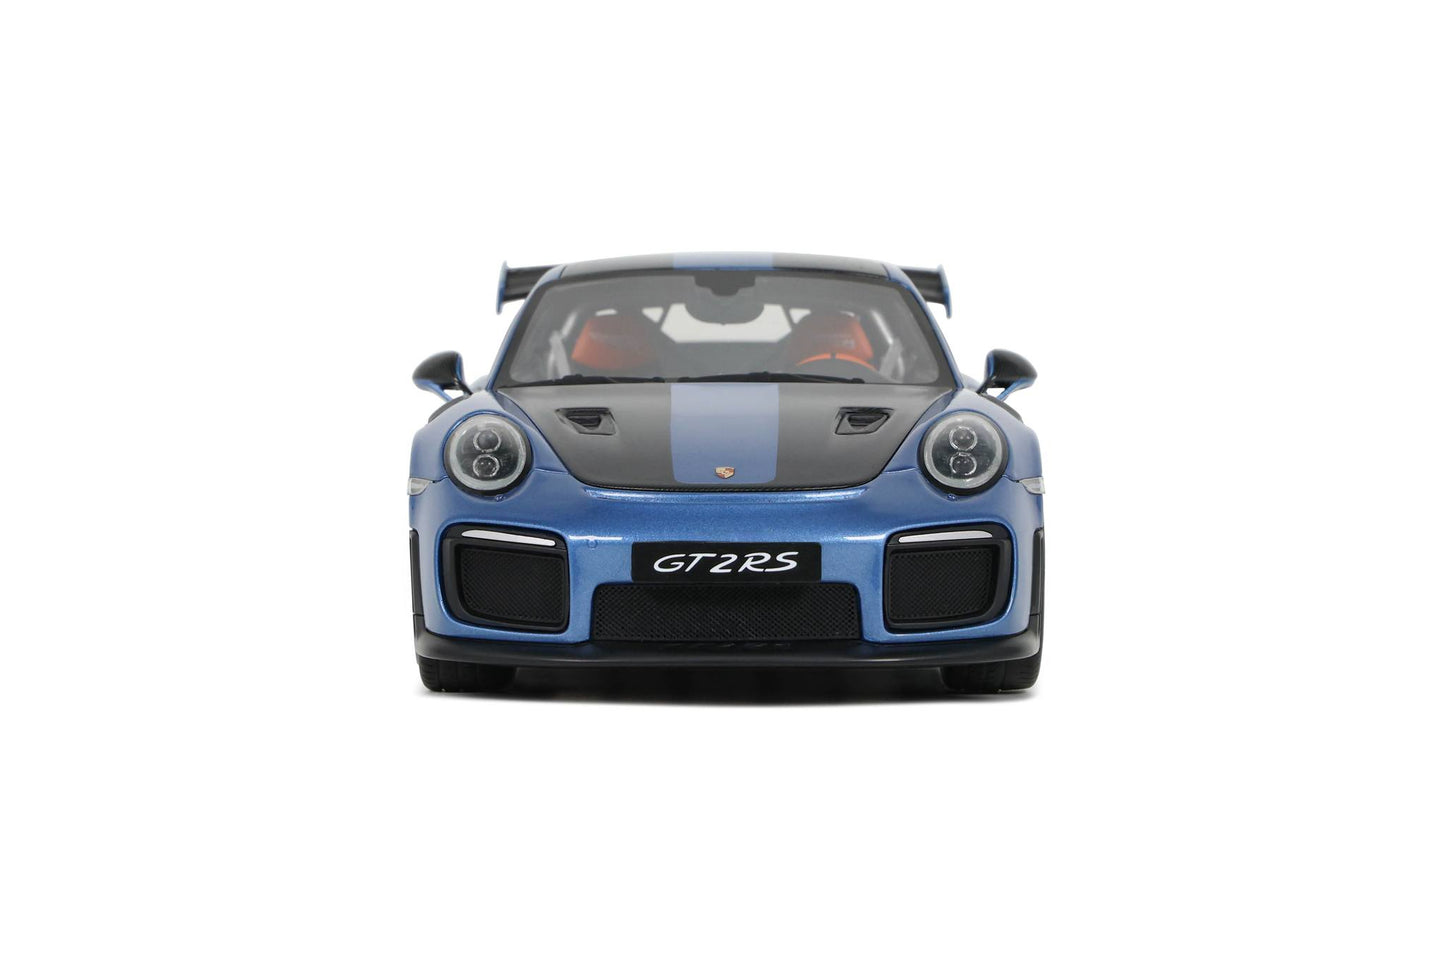 1:18 Porsche 911 991.2 GT2 RS, 2021, blå, GT429, GT Spirit, limited